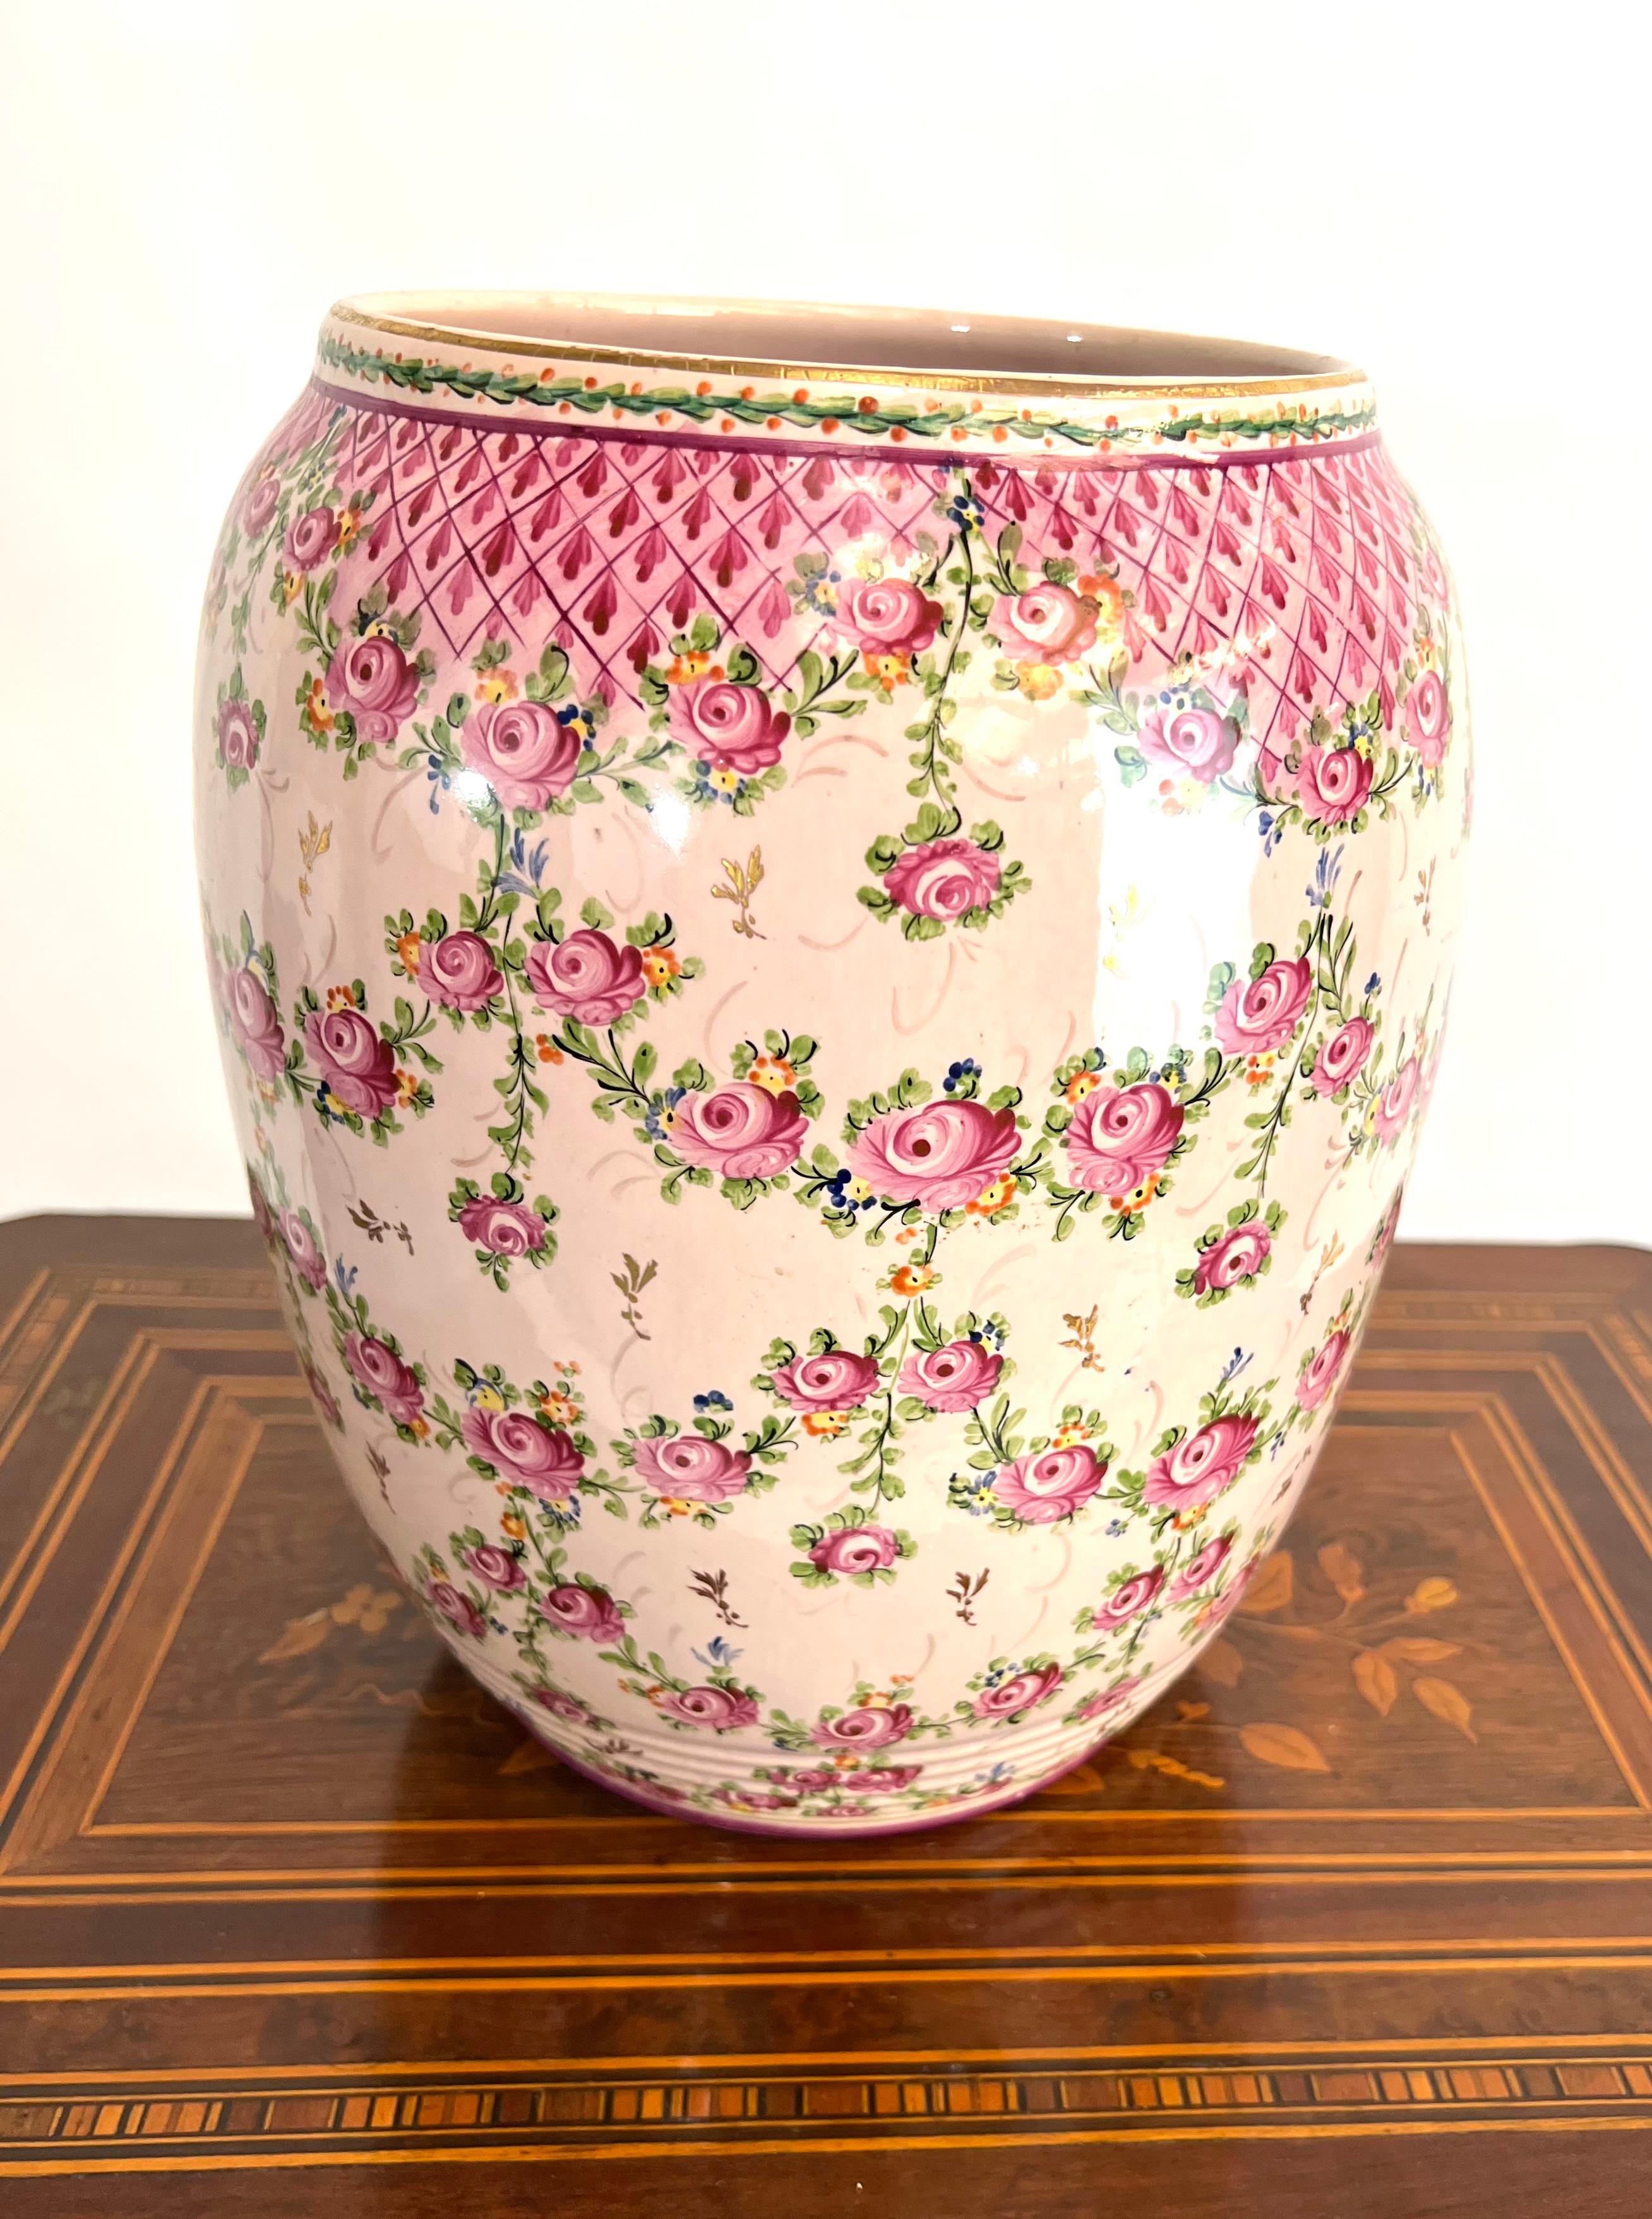 Ce superbe vase en faïence de Clamecy présente un ravissant décor de roses entrelacées et de délicats motifs en treillis. Le vase est soigneusement signé en dessous, ce qui ajoute une touche d'authenticité et de valeur à cette pièce. Avec son aspect